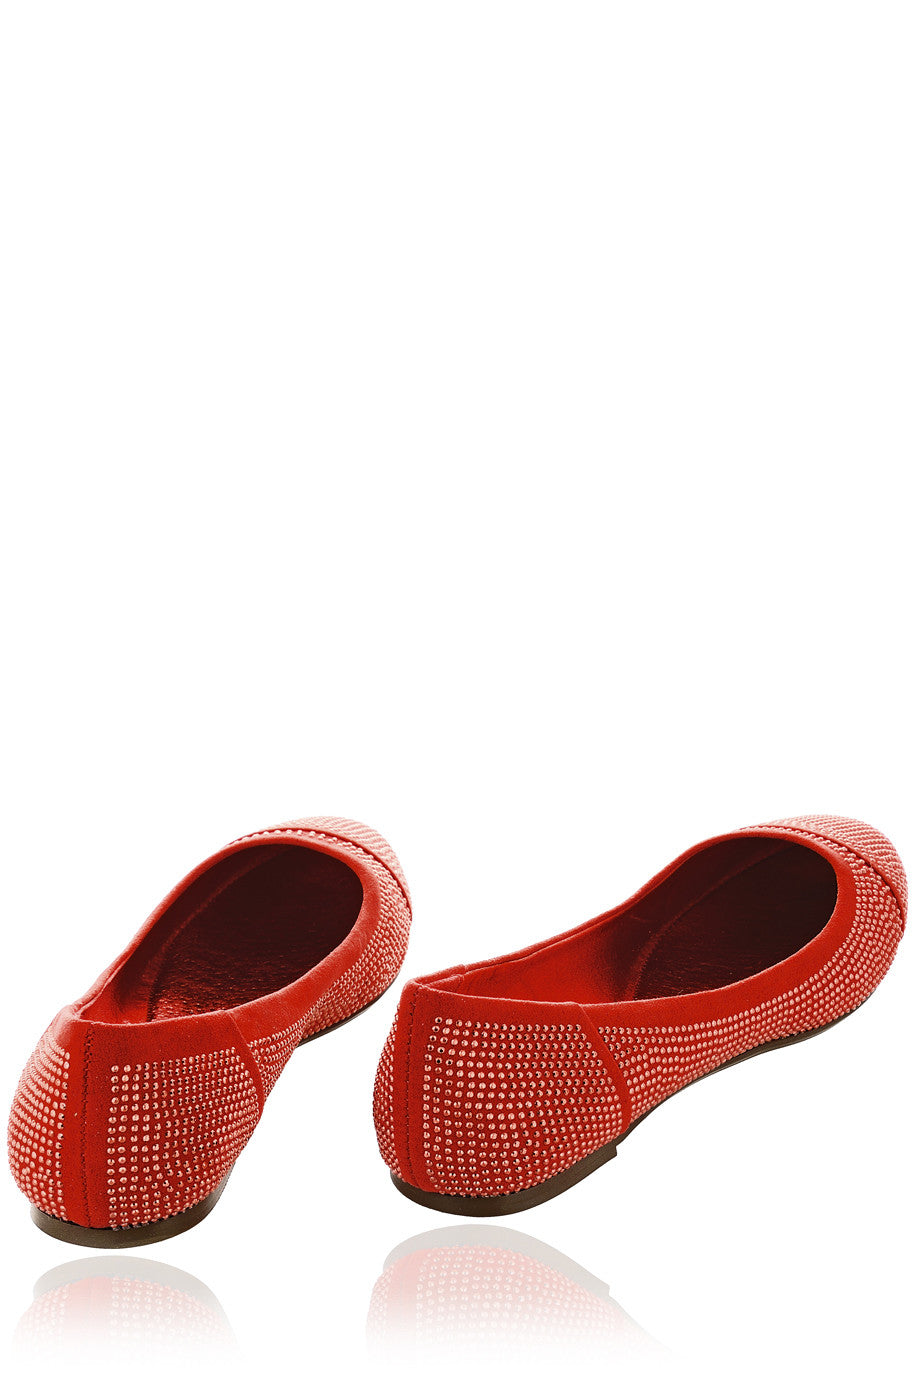 Κόκκινες Μπαλαρίνες με Στρας - Blink | Γυναικεία Παπούτσια